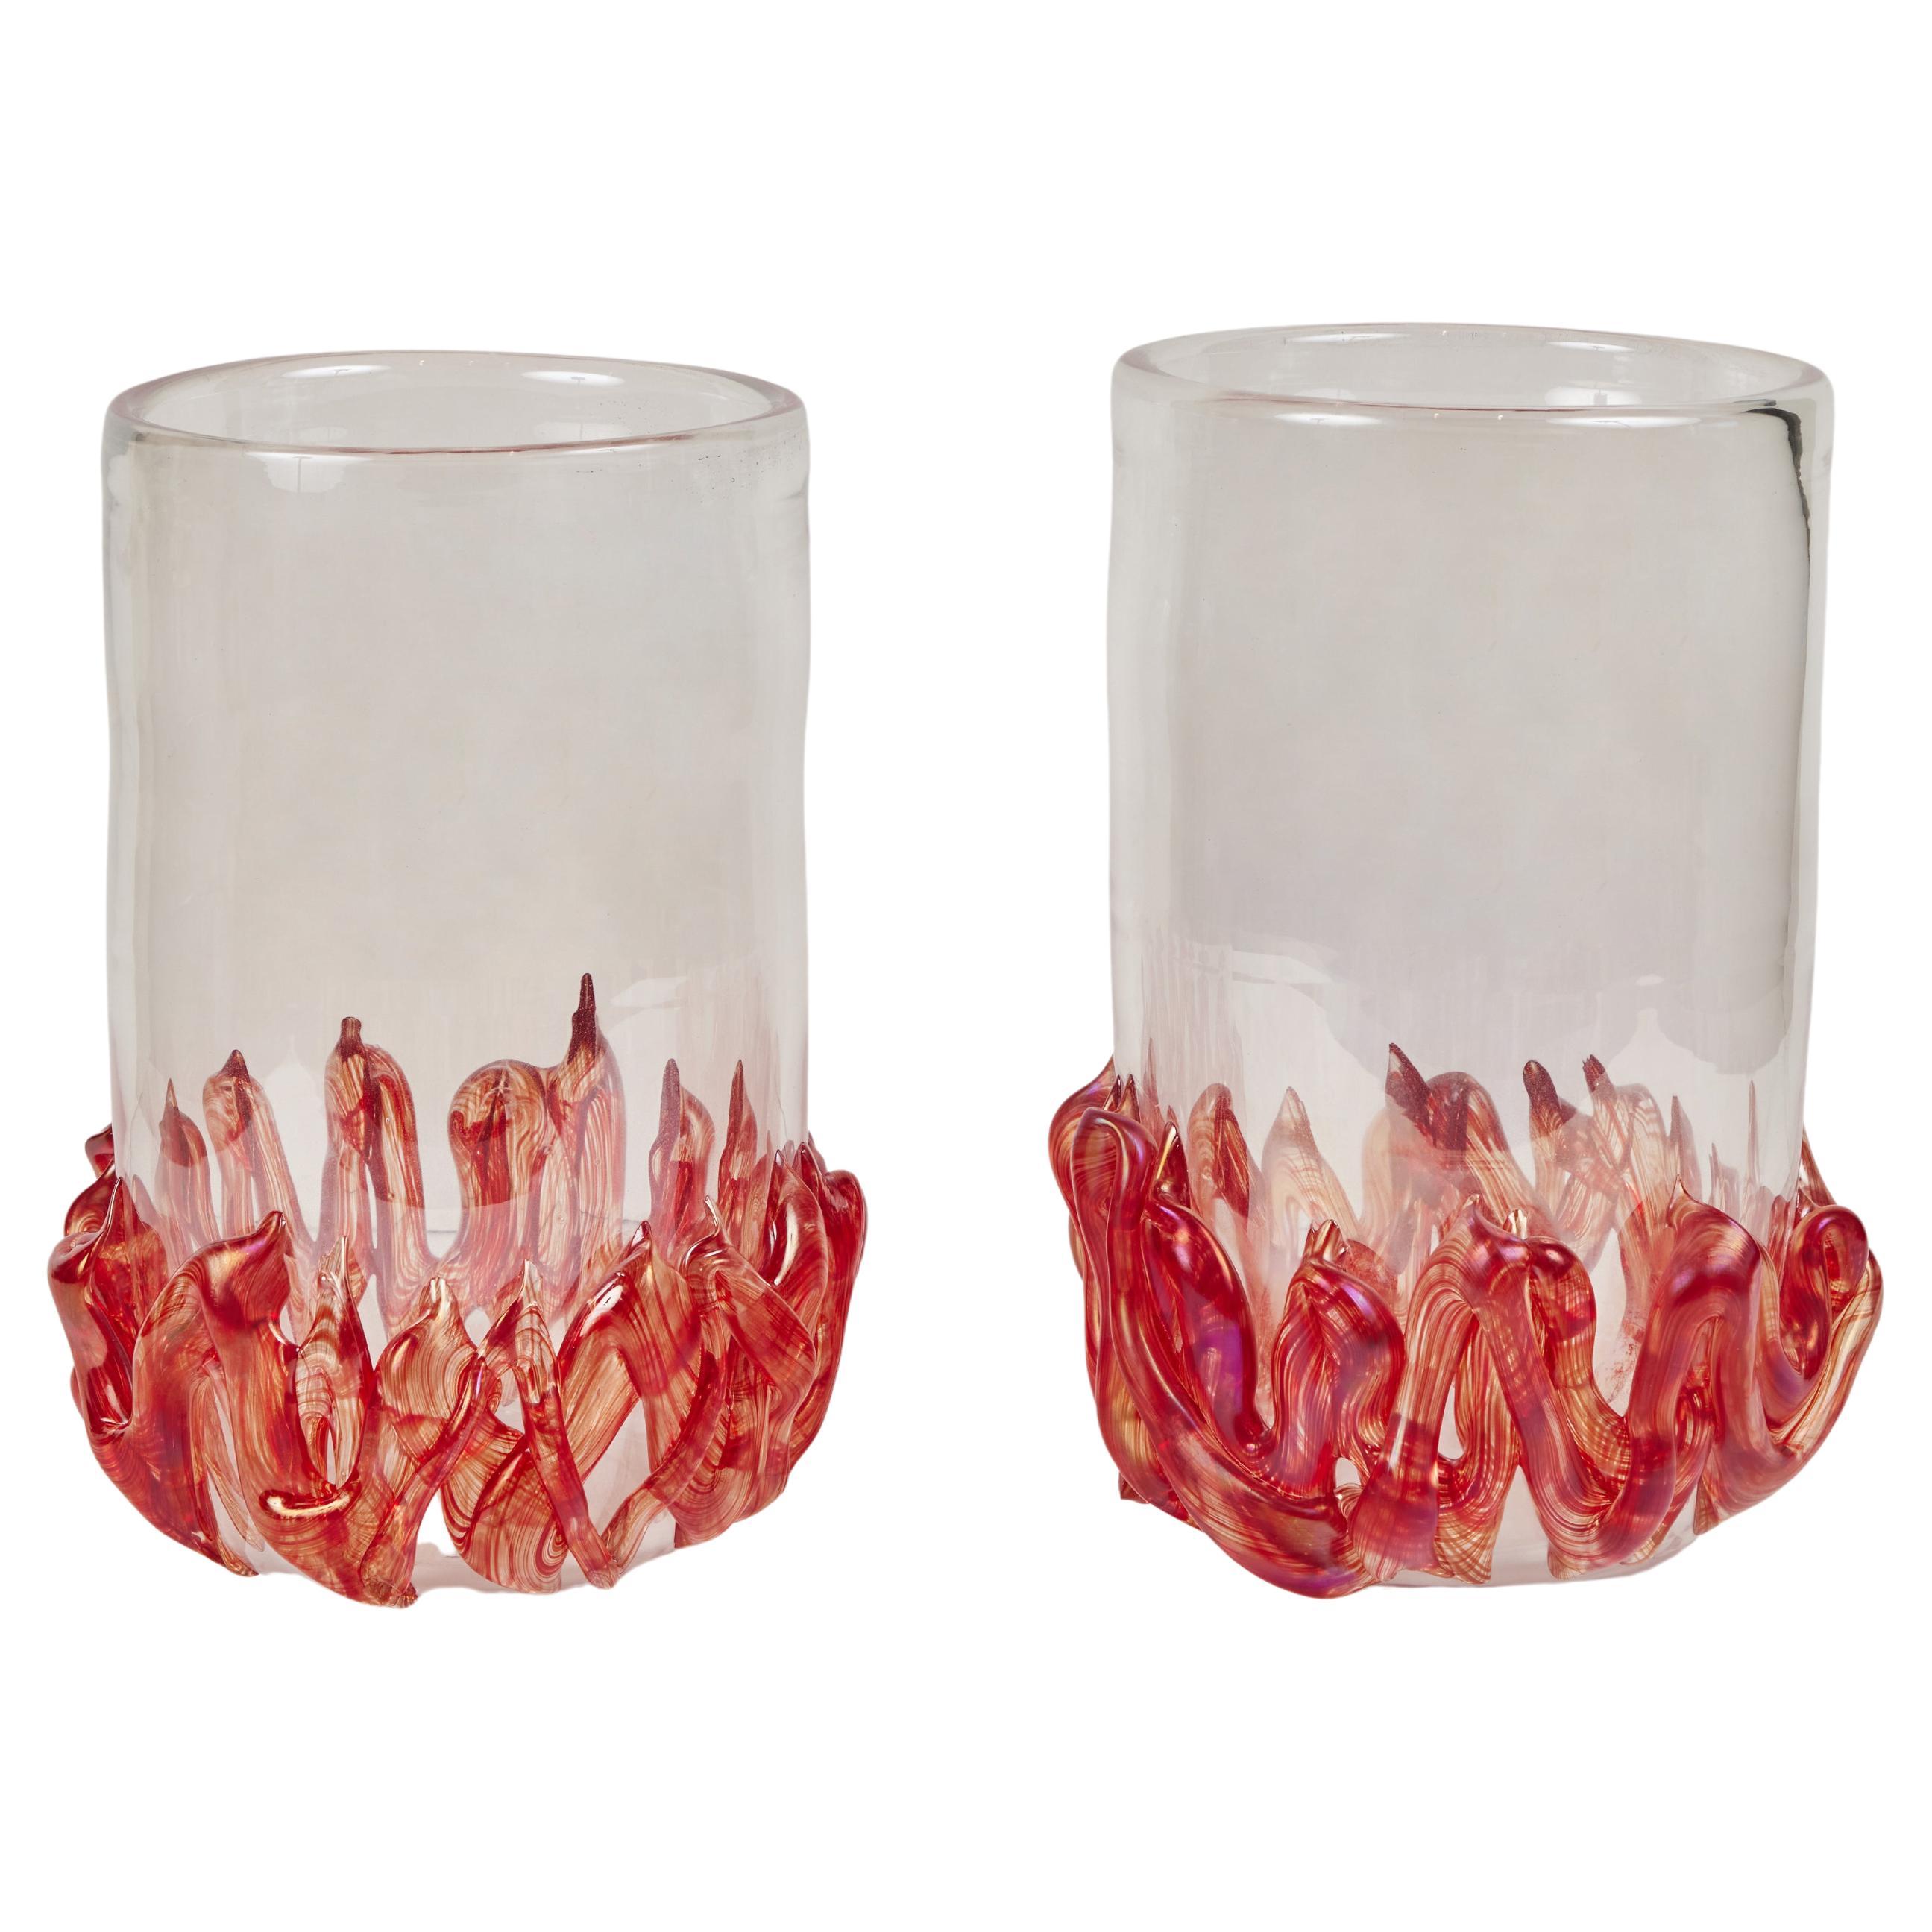 Signiertes Paar Vasen aus Muranoglas mit Flammendetails